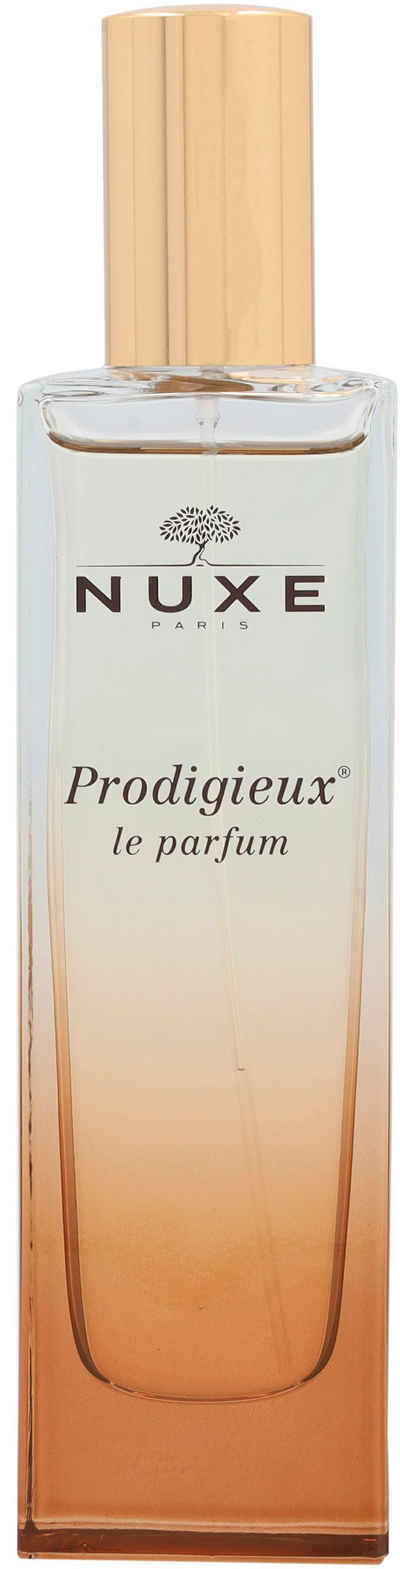 Nuxe Eau de Parfum Prodigieux Le Parfum